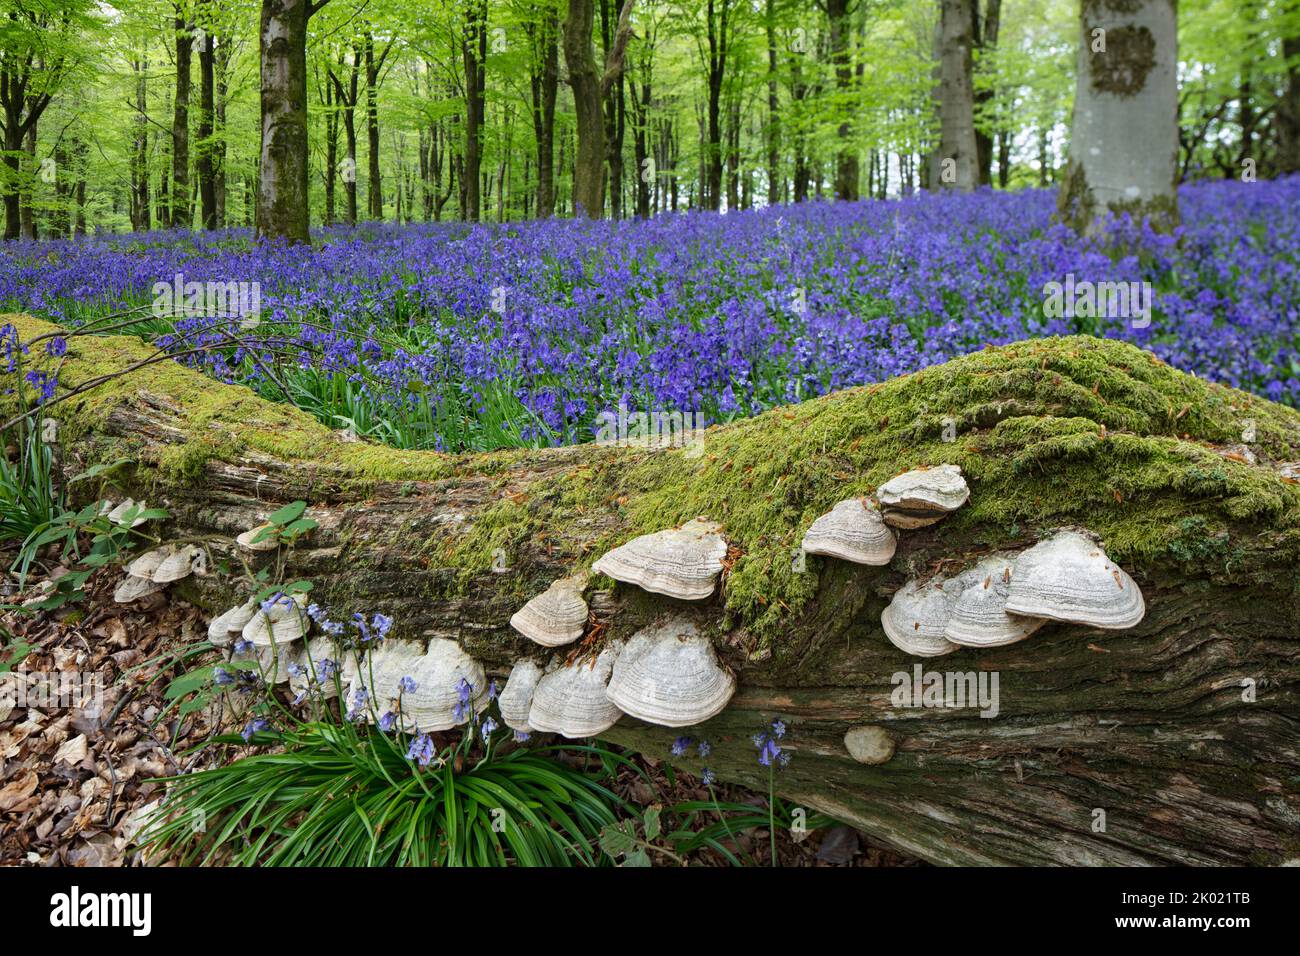 Funghi creciendo en el tocón de árboles caídos y en descomposición en madera de bluebell, Berkshire, Inglaterra, Reino Unido, Europa Foto de stock